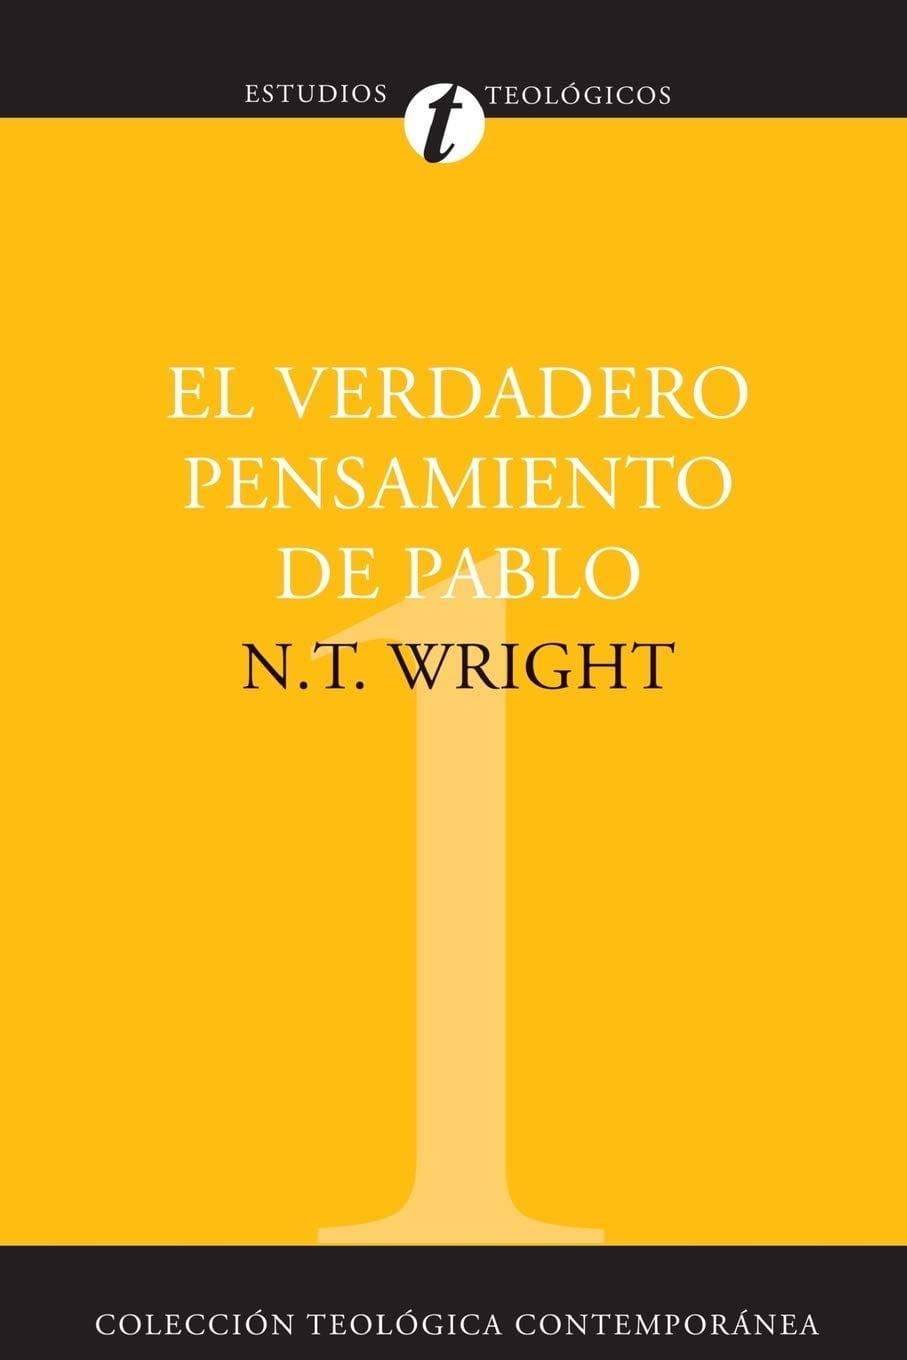 El verdadero pensamiento de Pablo - N. T. Wright - Pura Vida Books